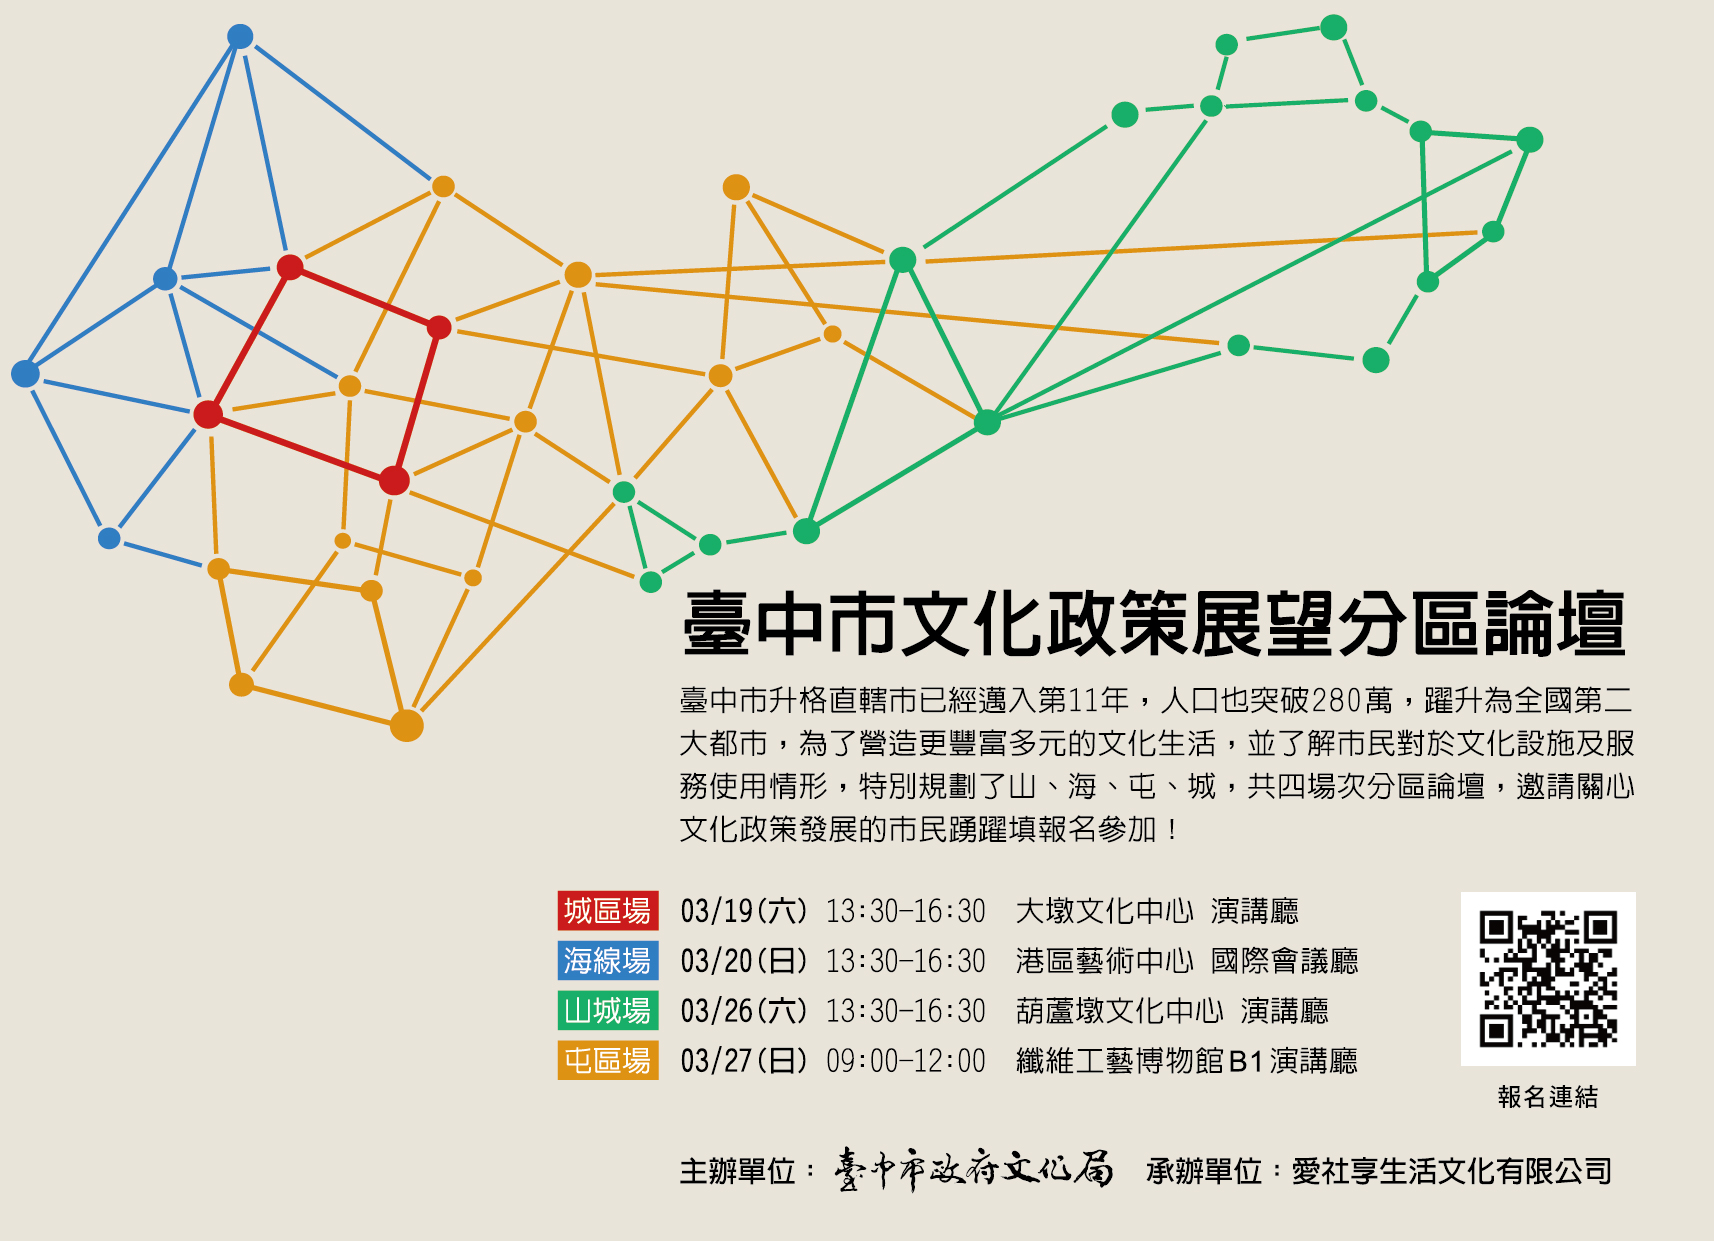 臺中市文化政策展望分區論壇圖卡.jpg